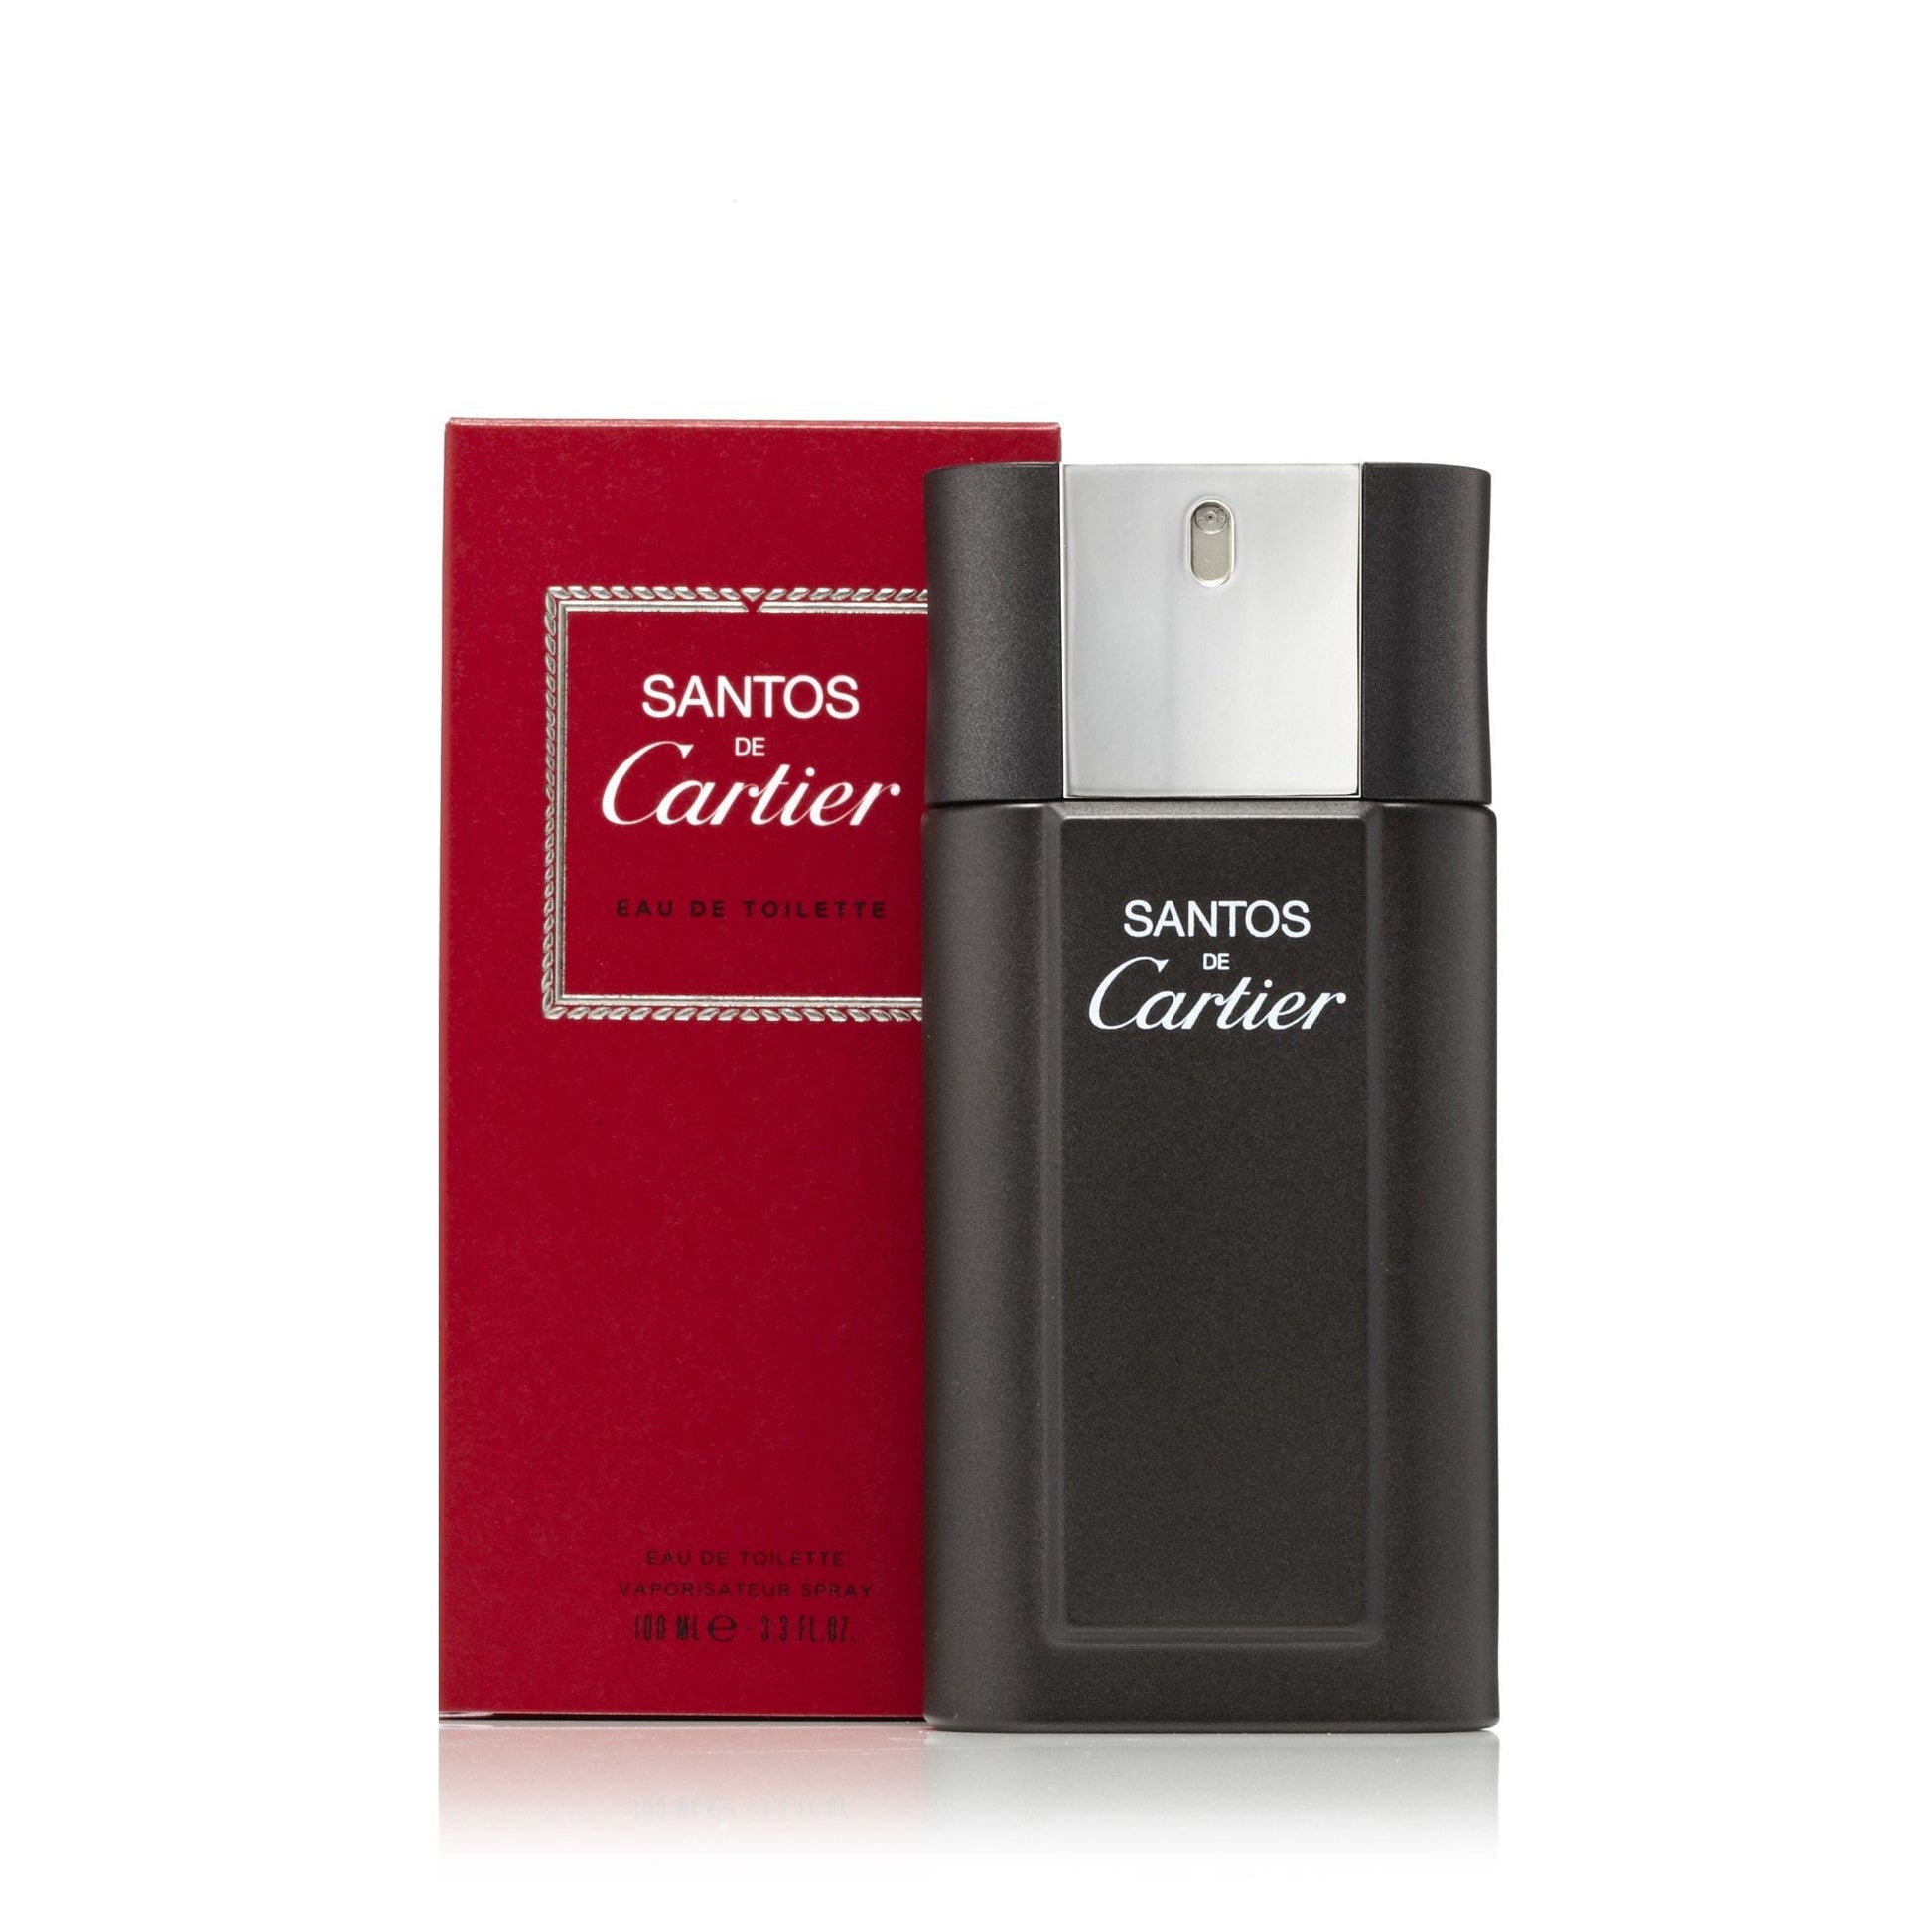 Santos Eau de Toilette Spray for Men by Cartier, Product image 2